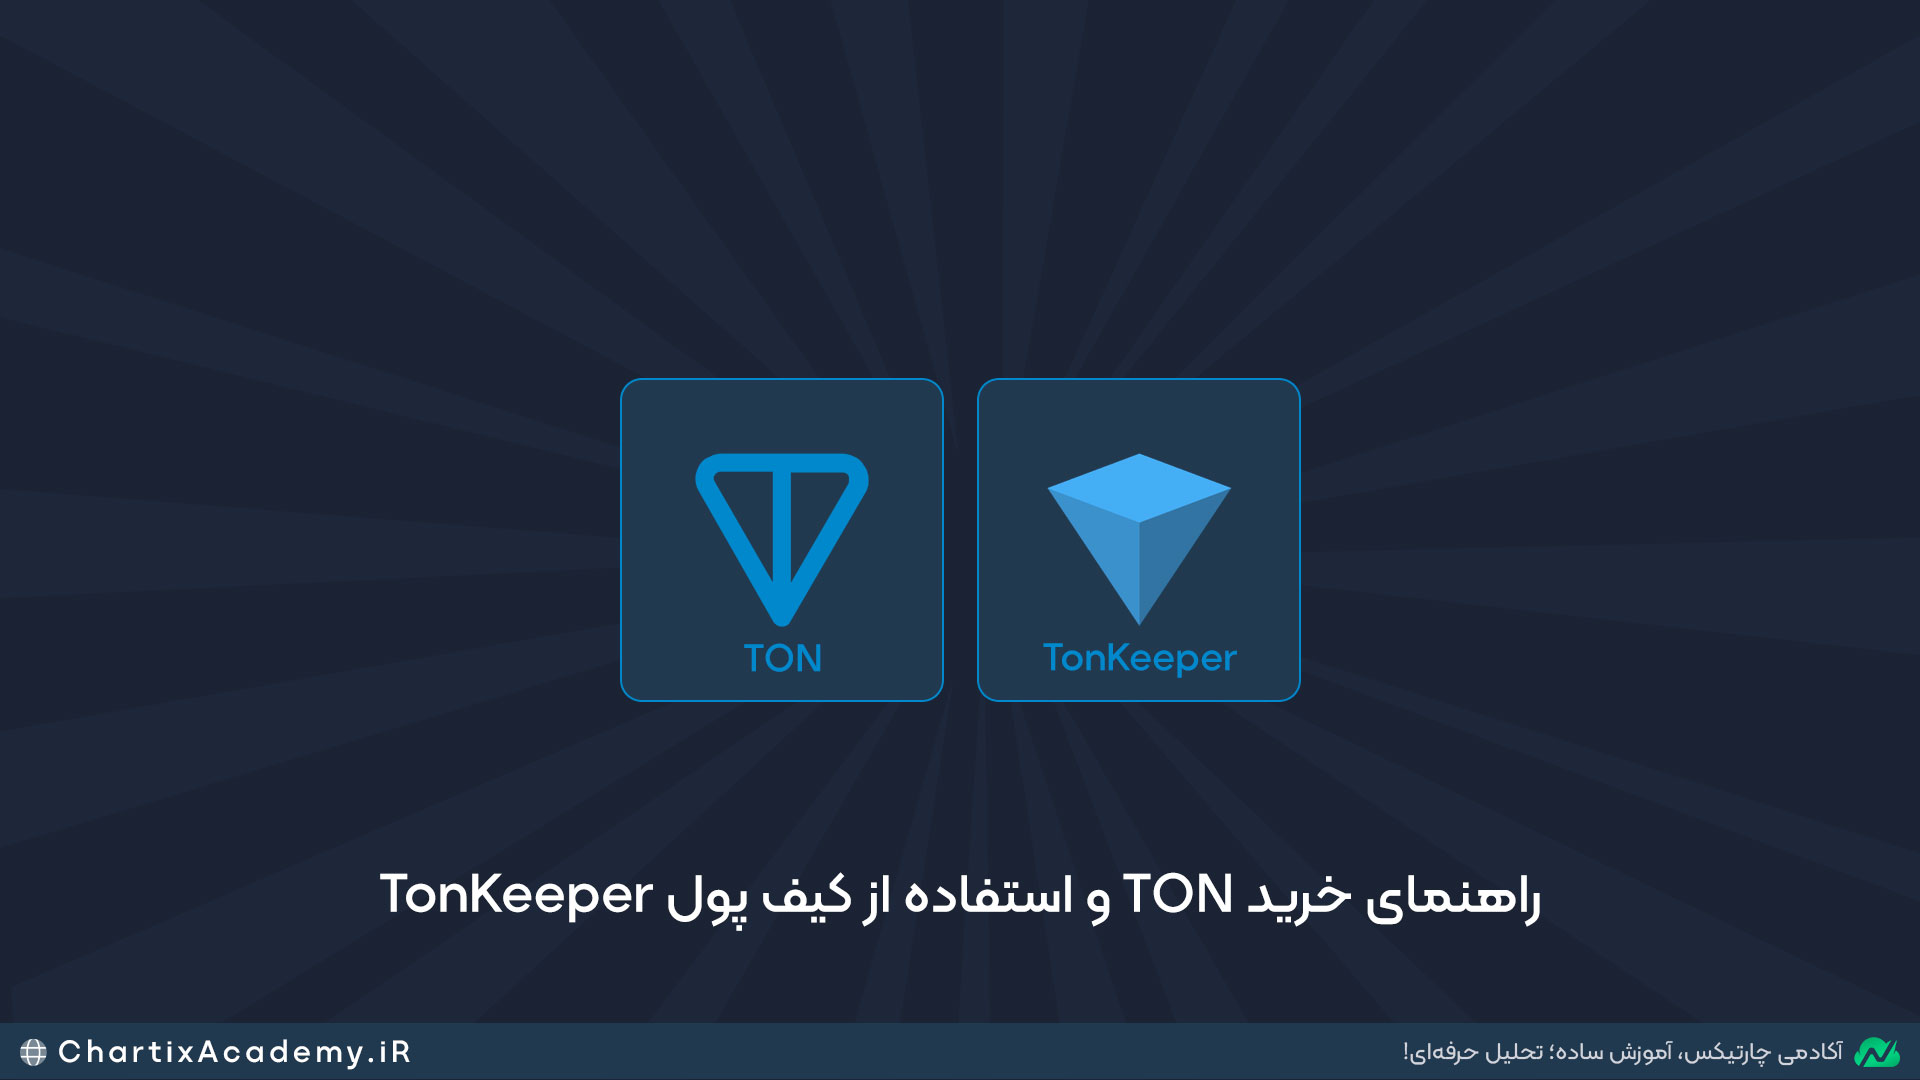 راهنمای خرید TON و استفاده از کیف پول TonKeeper